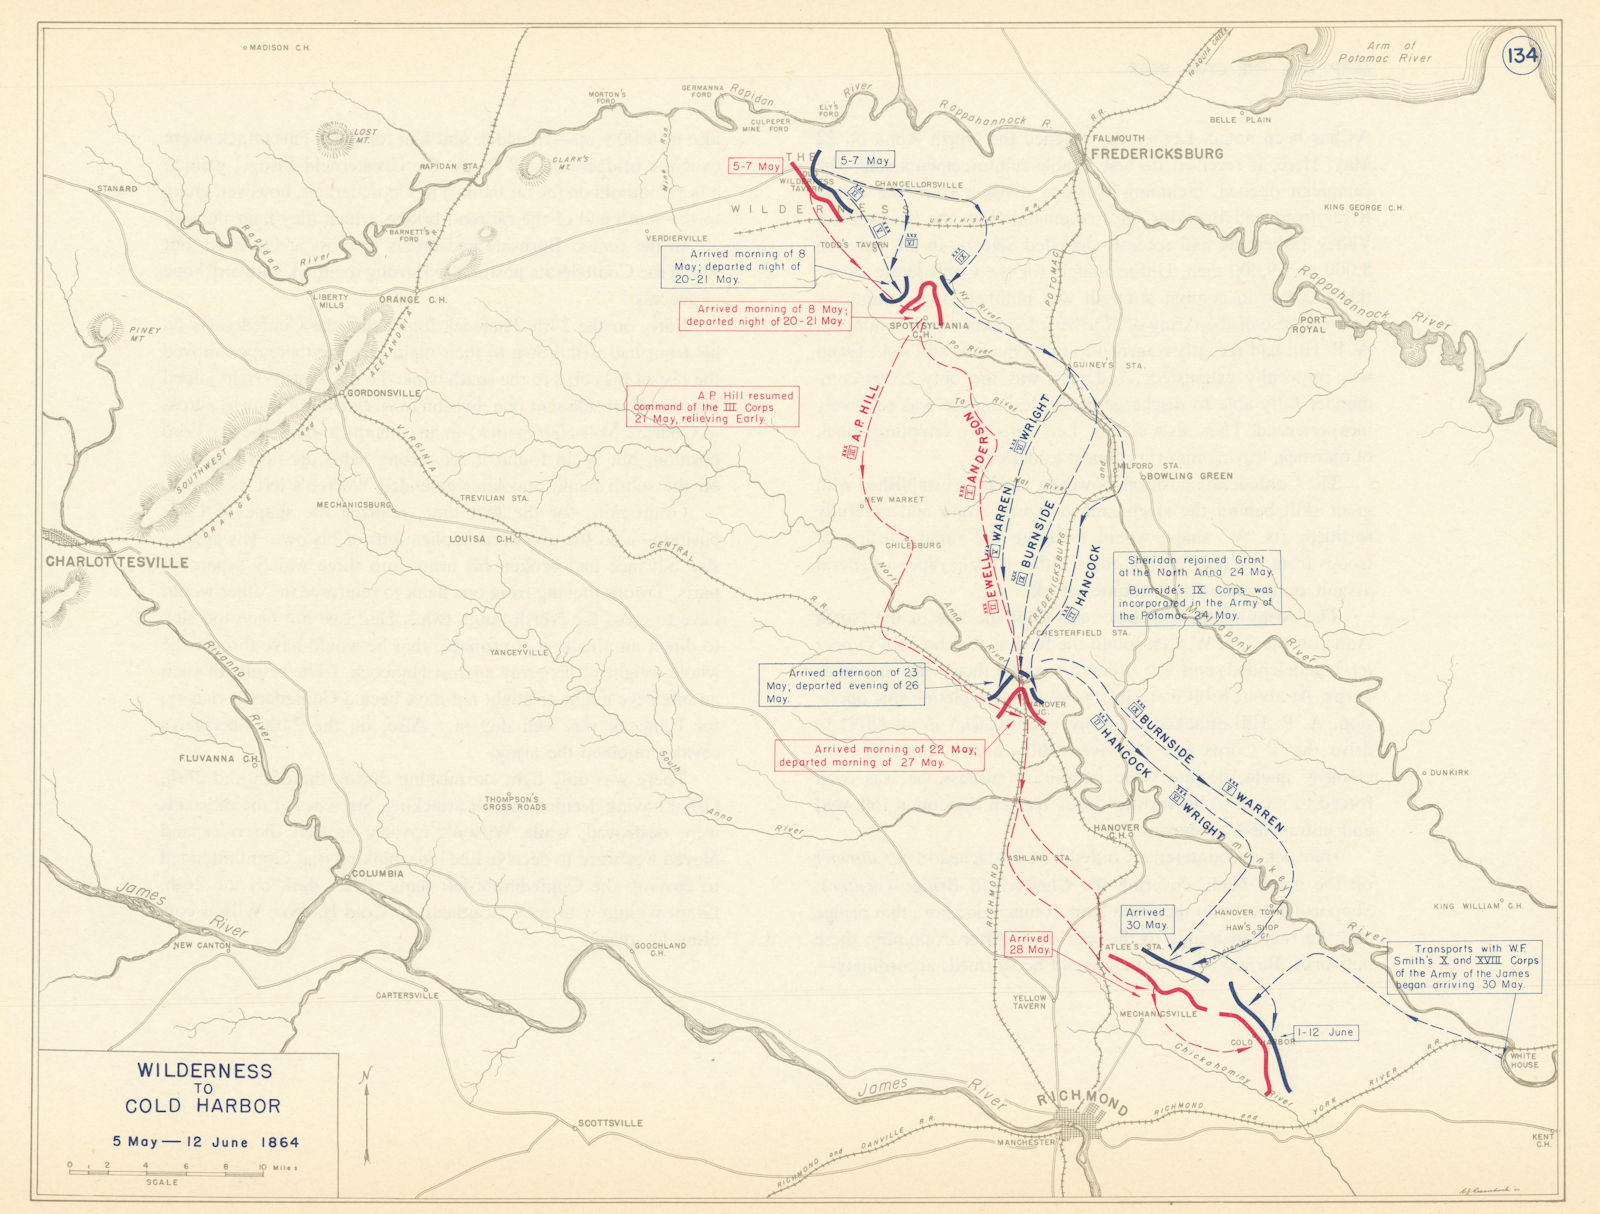 American Civil War. 5 May-12 June 1864 Wilderness-Cold Harbor. Virginia 1959 map